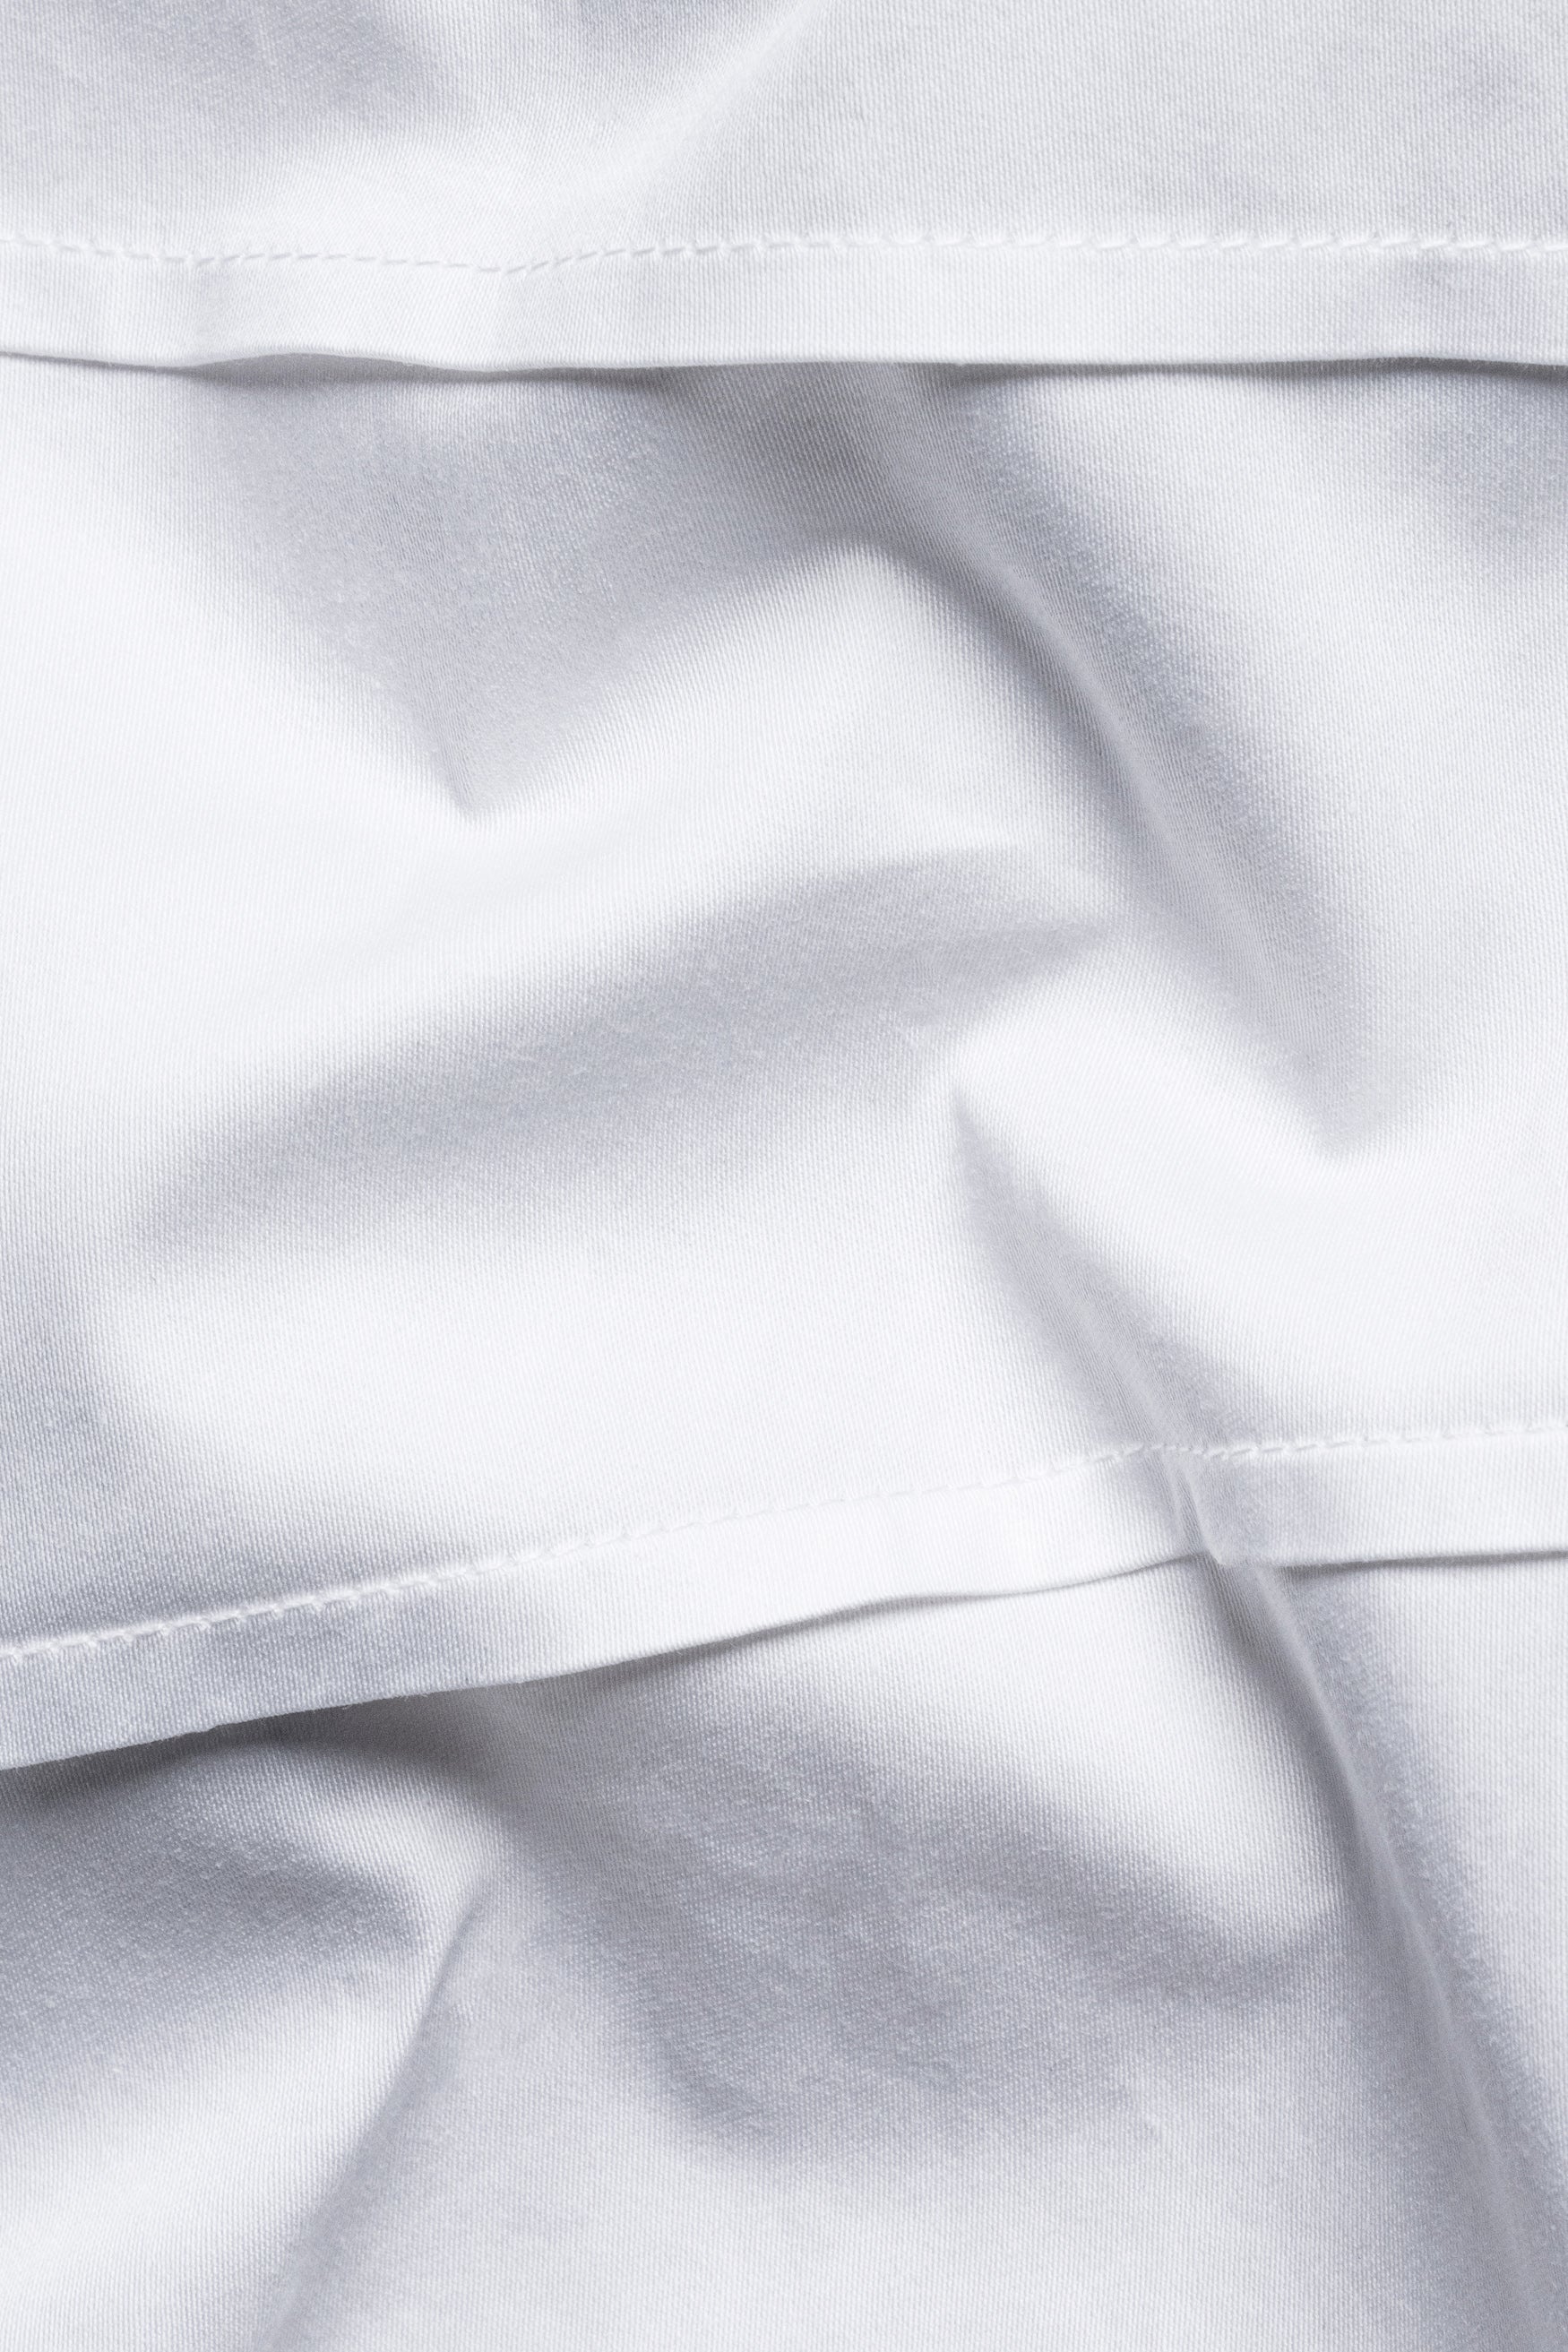 Bright White Infinite Lines Tucks Subtle Sheen Super Soft Premium Cotton Designer Shirt